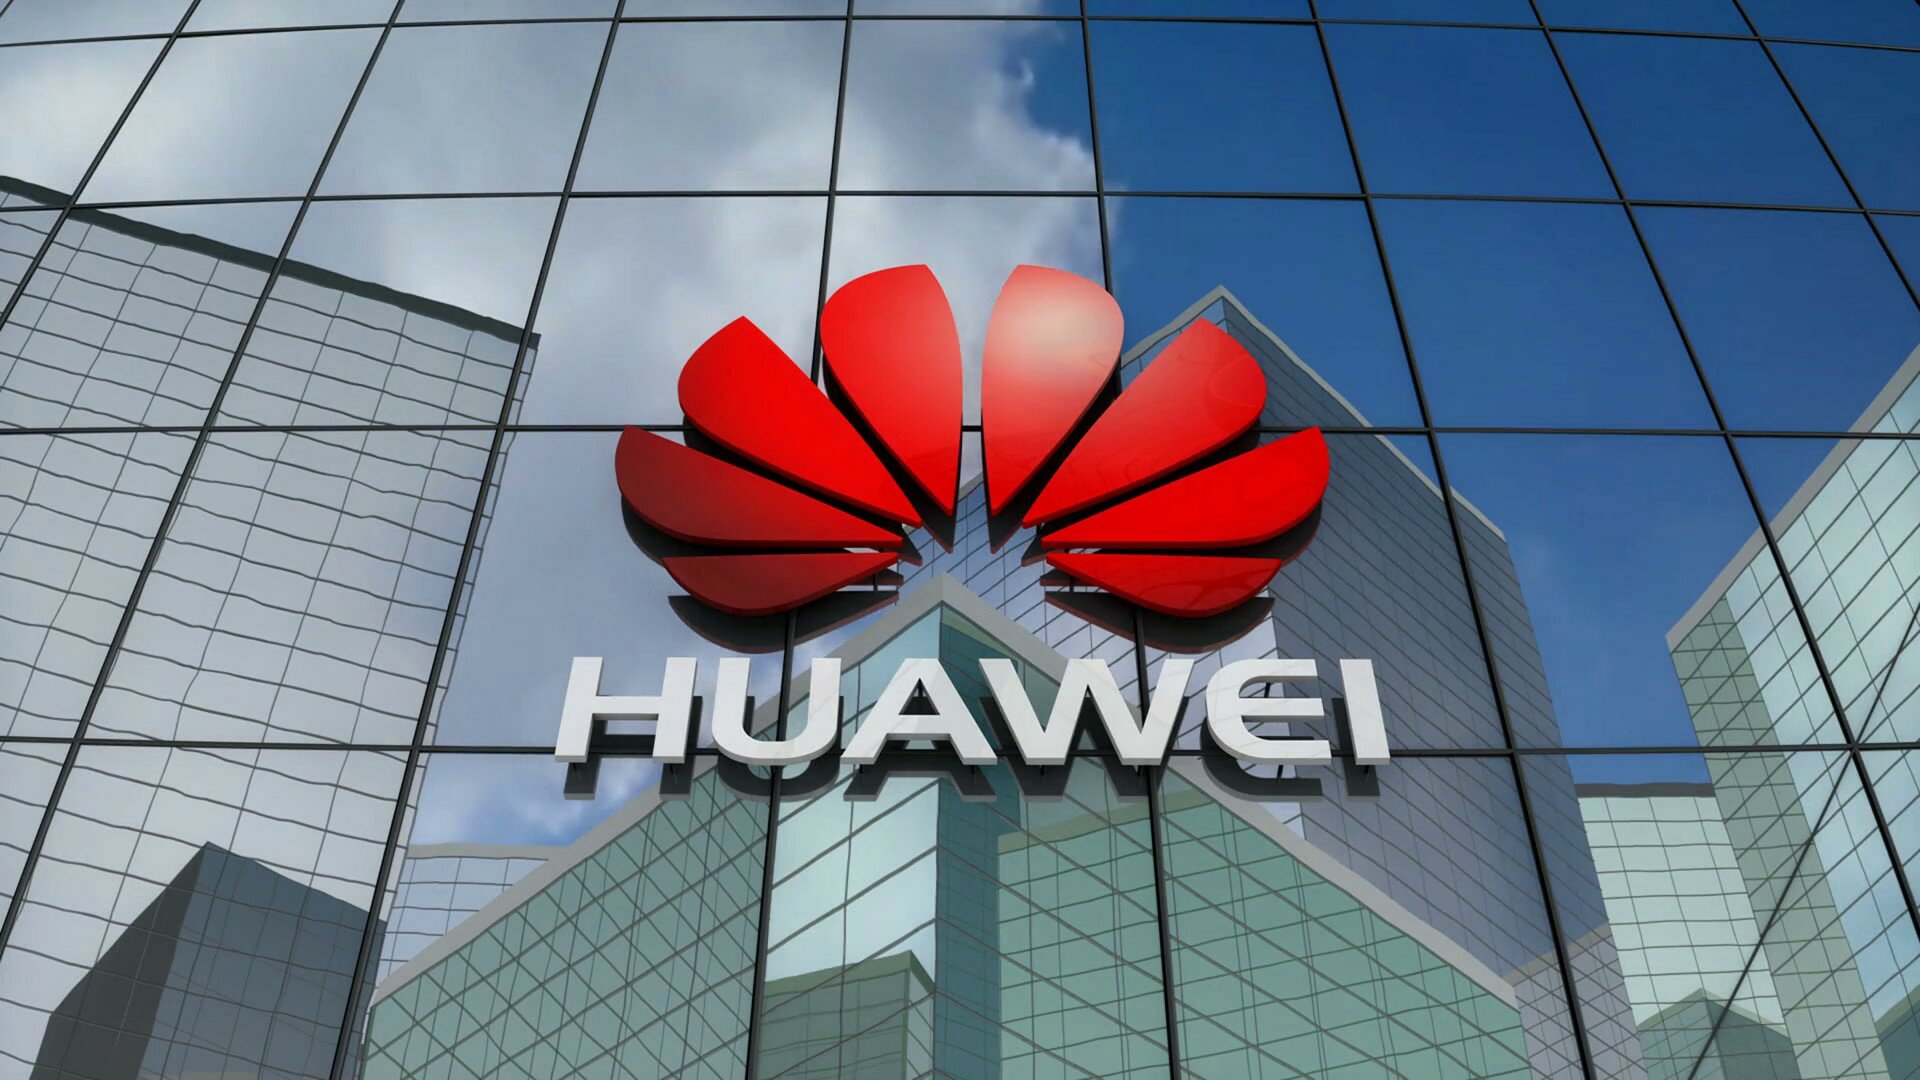 Живучие часы, мощнейший ноутбук и уникальный планшет: новинки Huawei покинули Китай